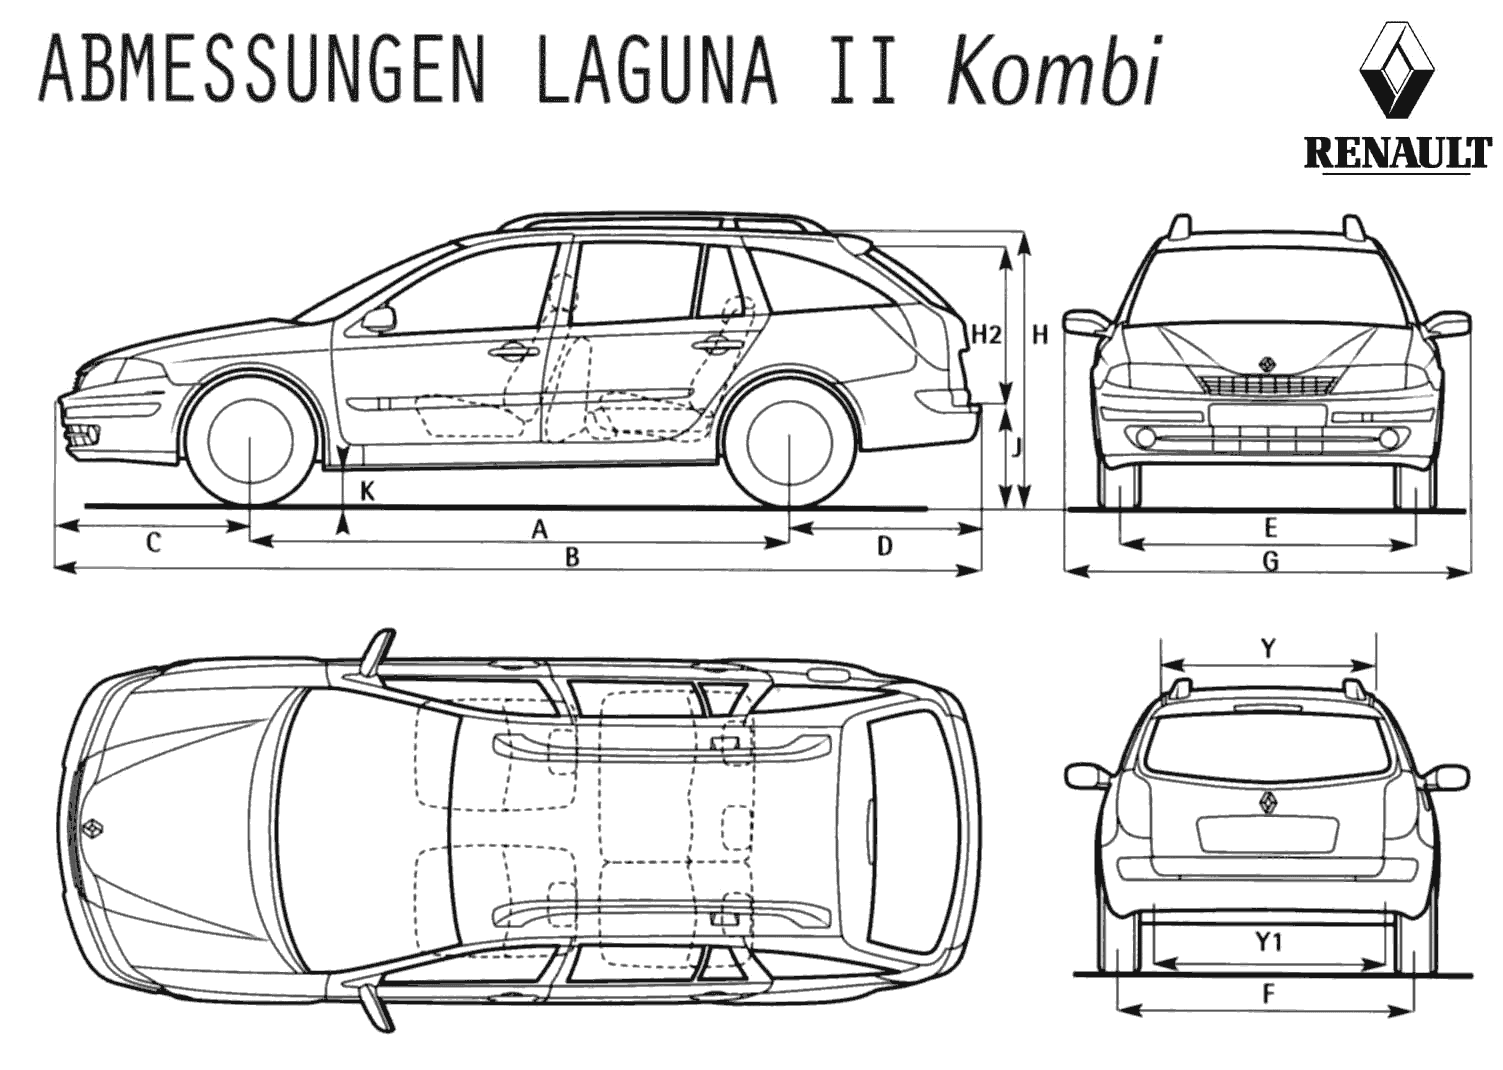 Automobilis Renault Laguna Combi